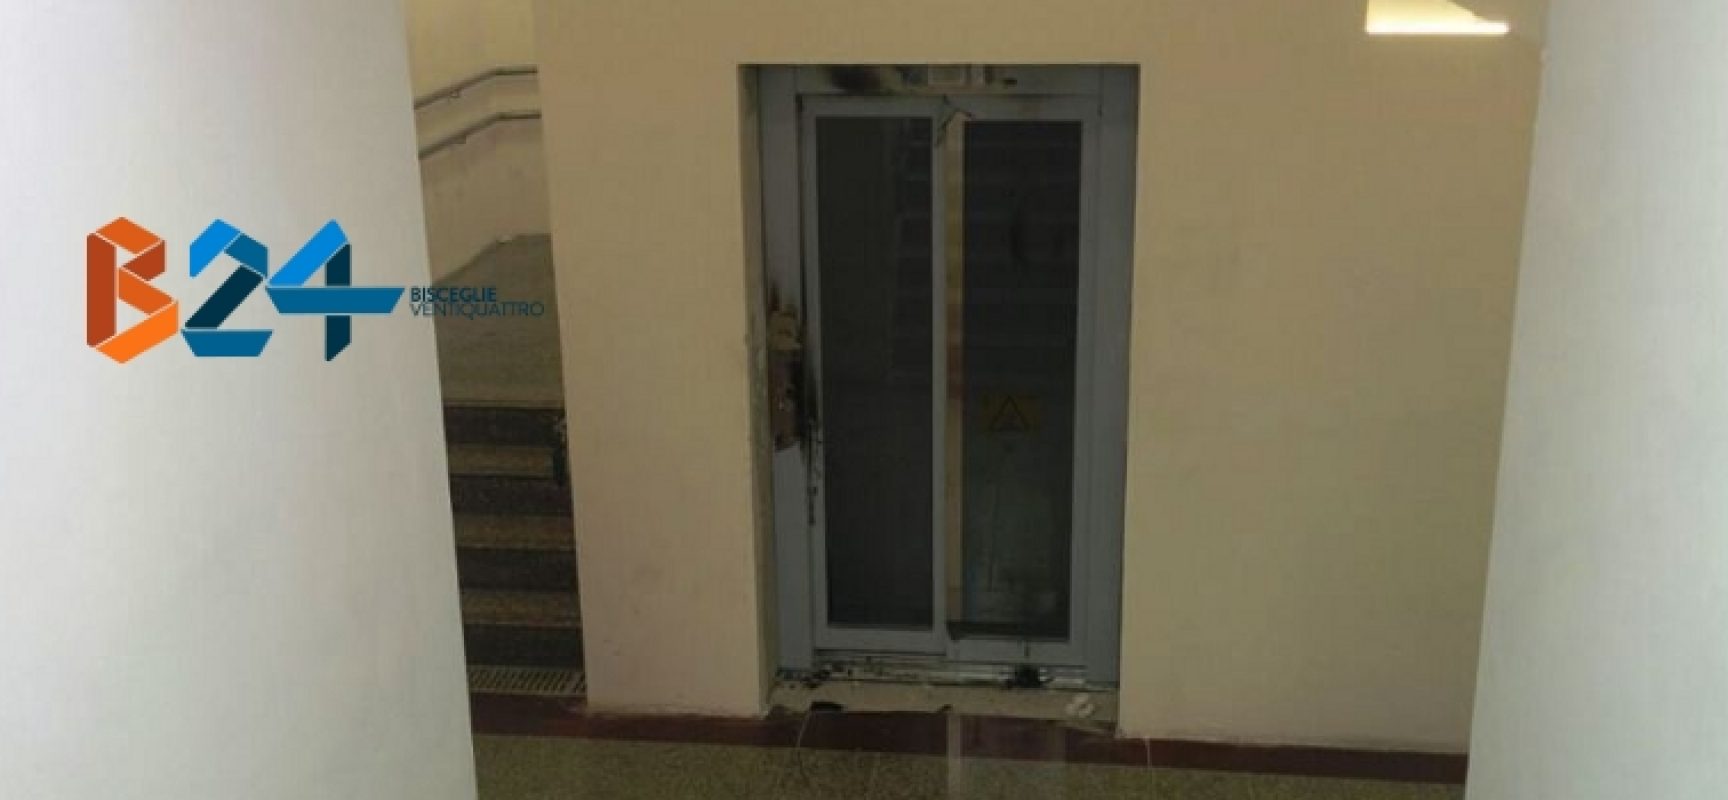 Vandali danneggiano ascensore sottopassaggio della stazione ferroviaria / FOTO